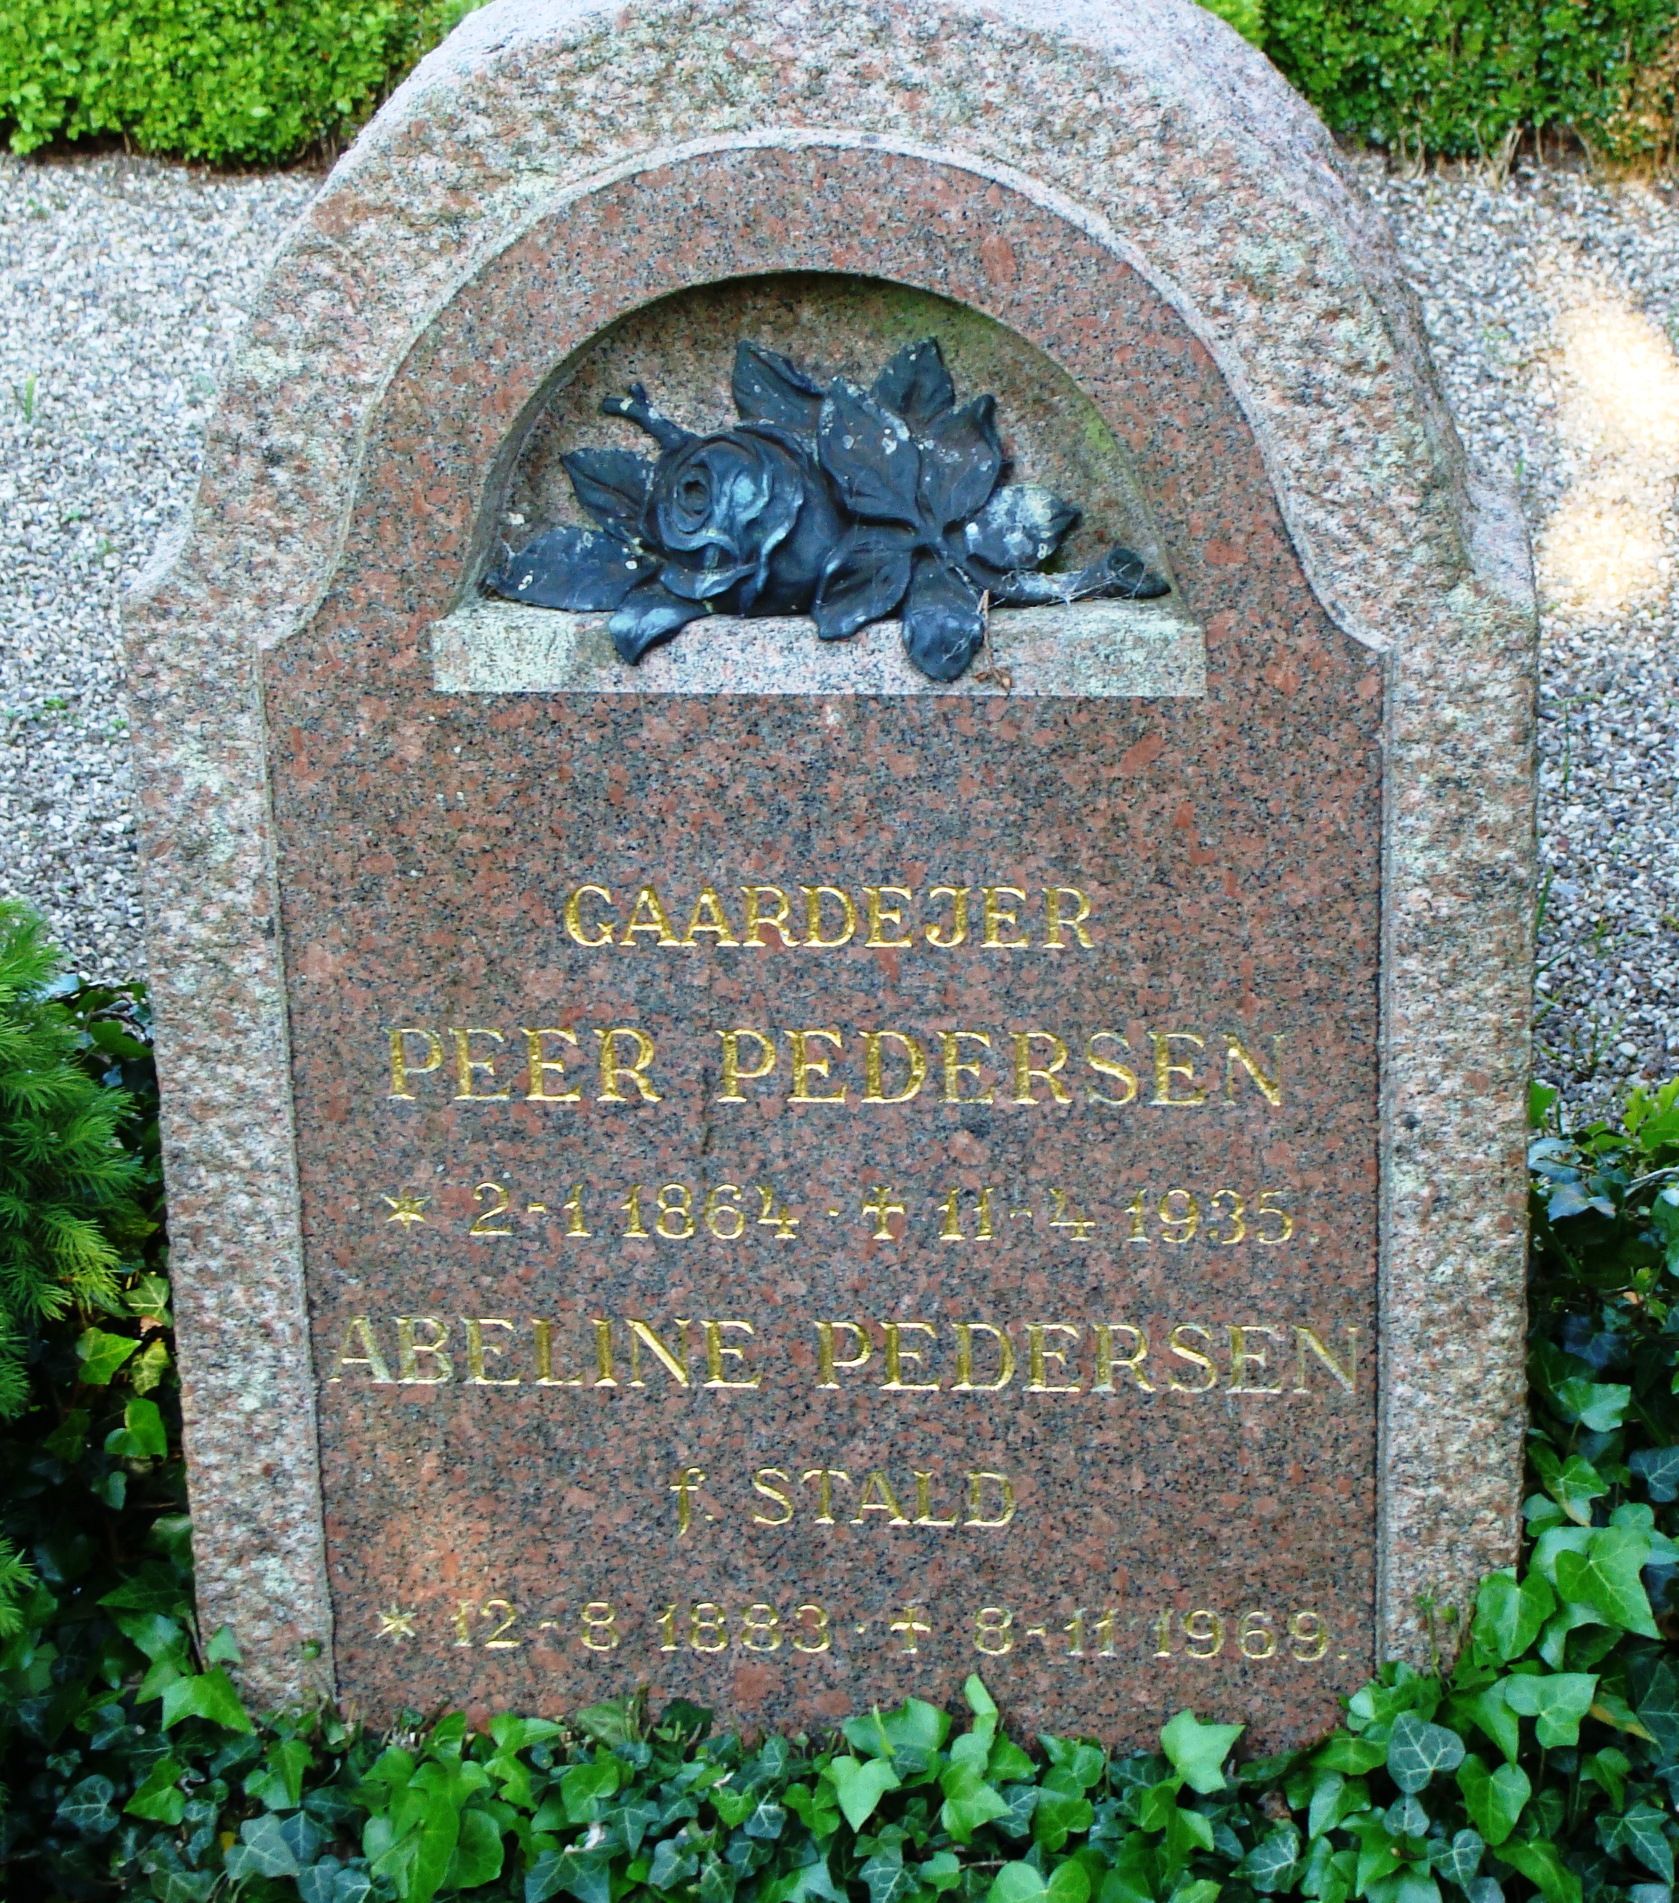 Abeline og Peder Hansens Pedersens gravsten p Skvinge Kirkegrd